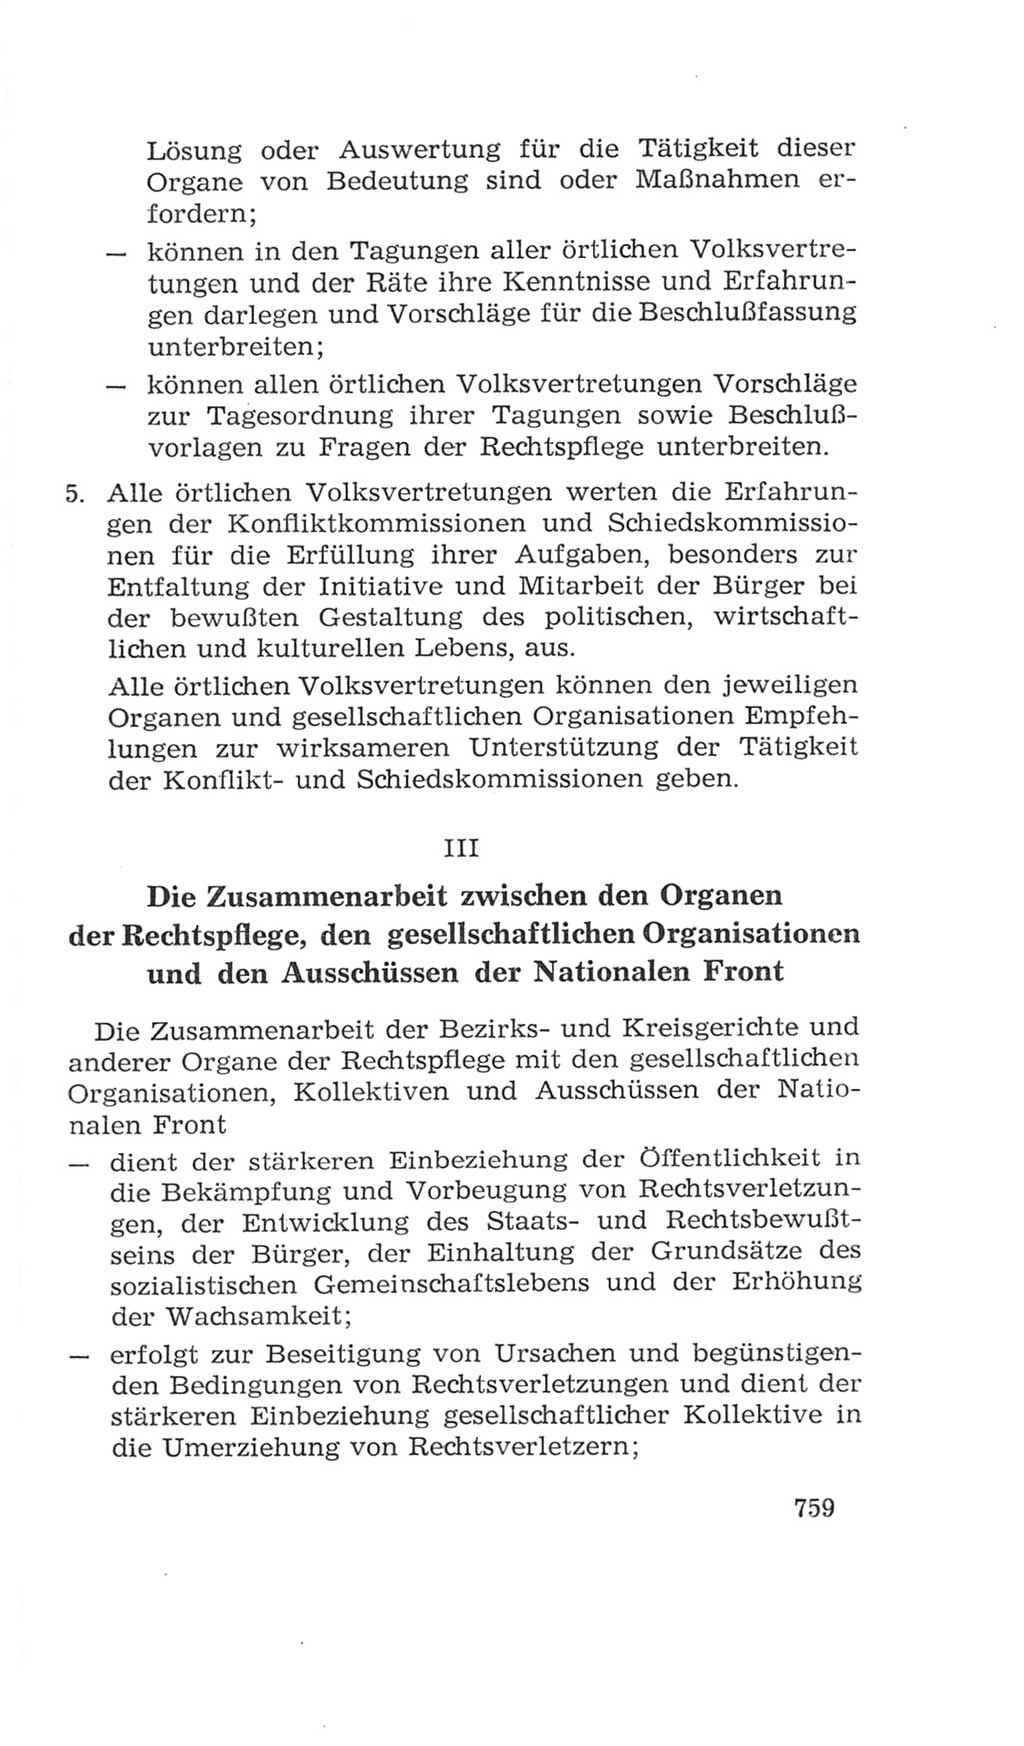 Volkskammer (VK) der Deutschen Demokratischen Republik (DDR), 4. Wahlperiode 1963-1967, Seite 759 (VK. DDR 4. WP. 1963-1967, S. 759)